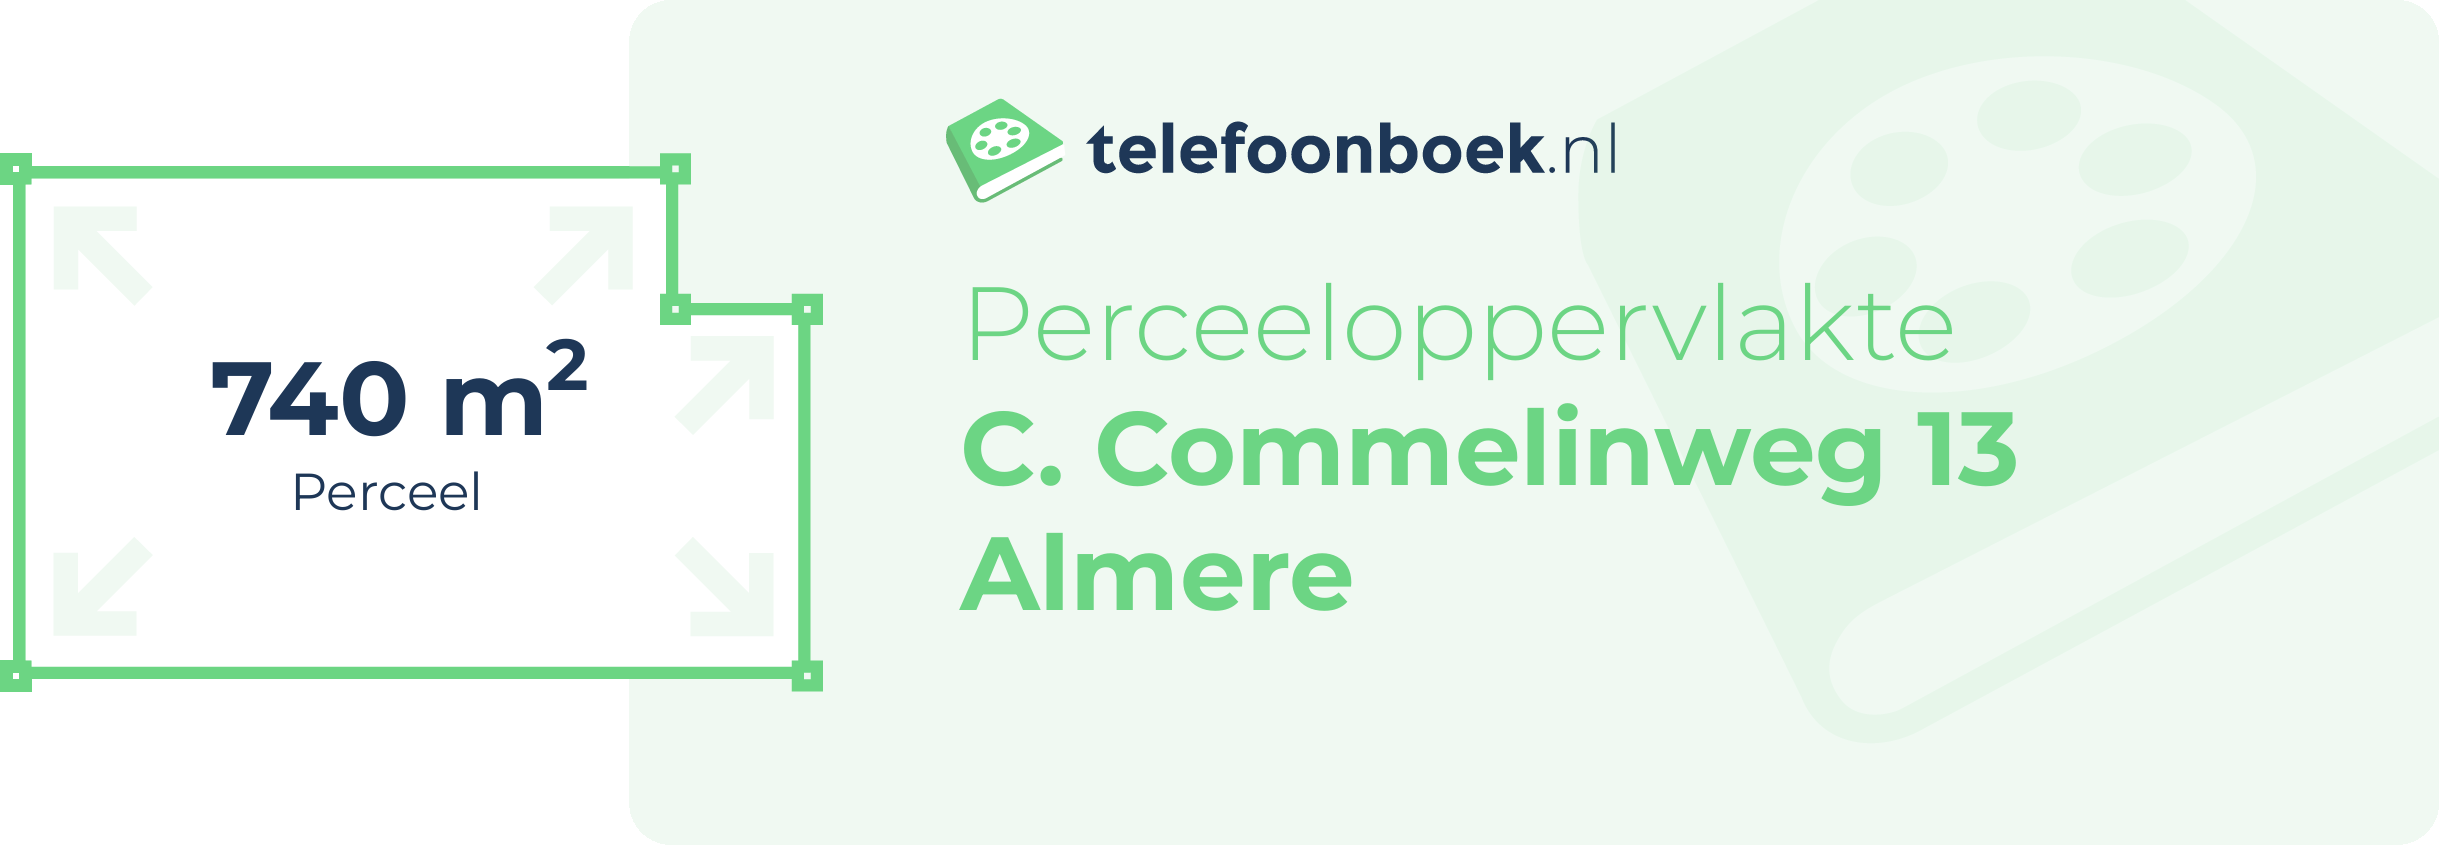 Perceeloppervlakte C. Commelinweg 13 Almere